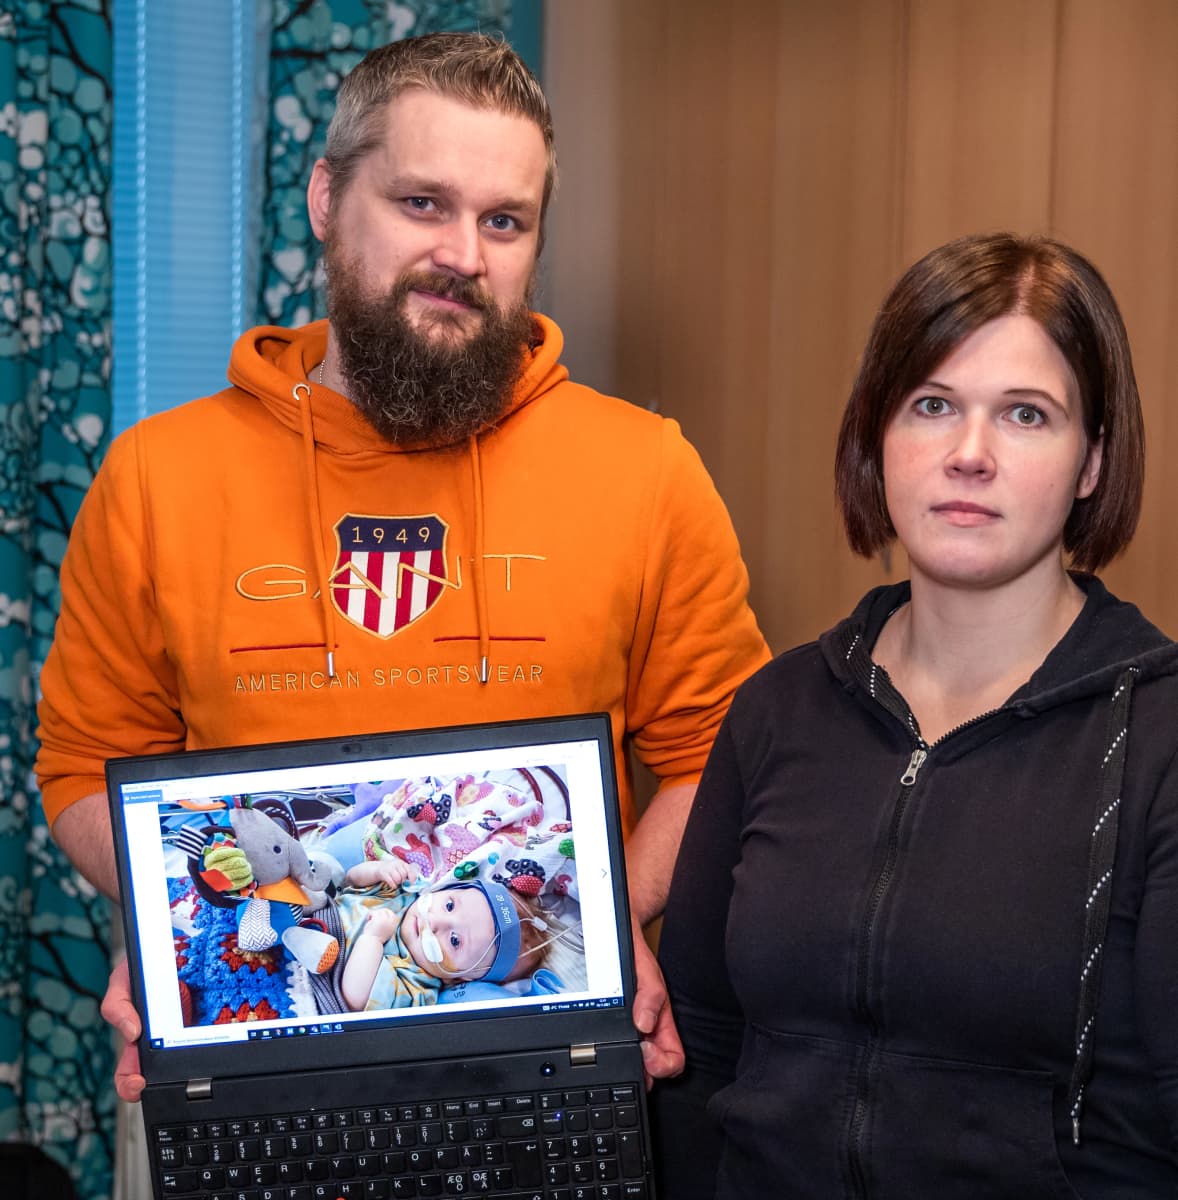 Vanhemmat näyttävät tietokoneelta Jaakko-vauvan kuvaa.